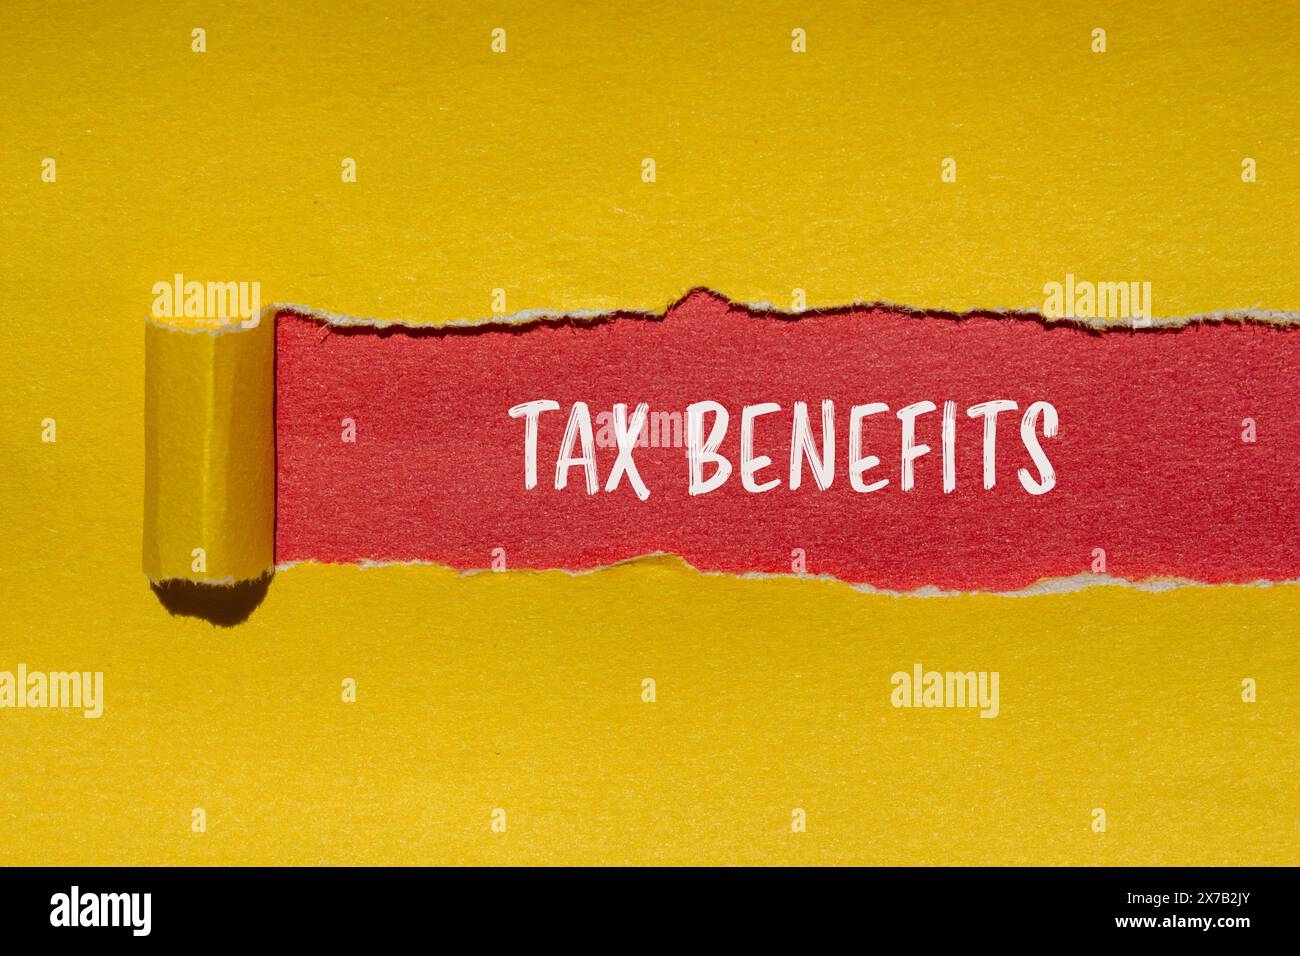 Mots sur les avantages fiscaux écrits sur du papier jaune déchiré sur fond rouge. Symbole d'avantages fiscaux conceptuels. Copier l'espace. Banque D'Images